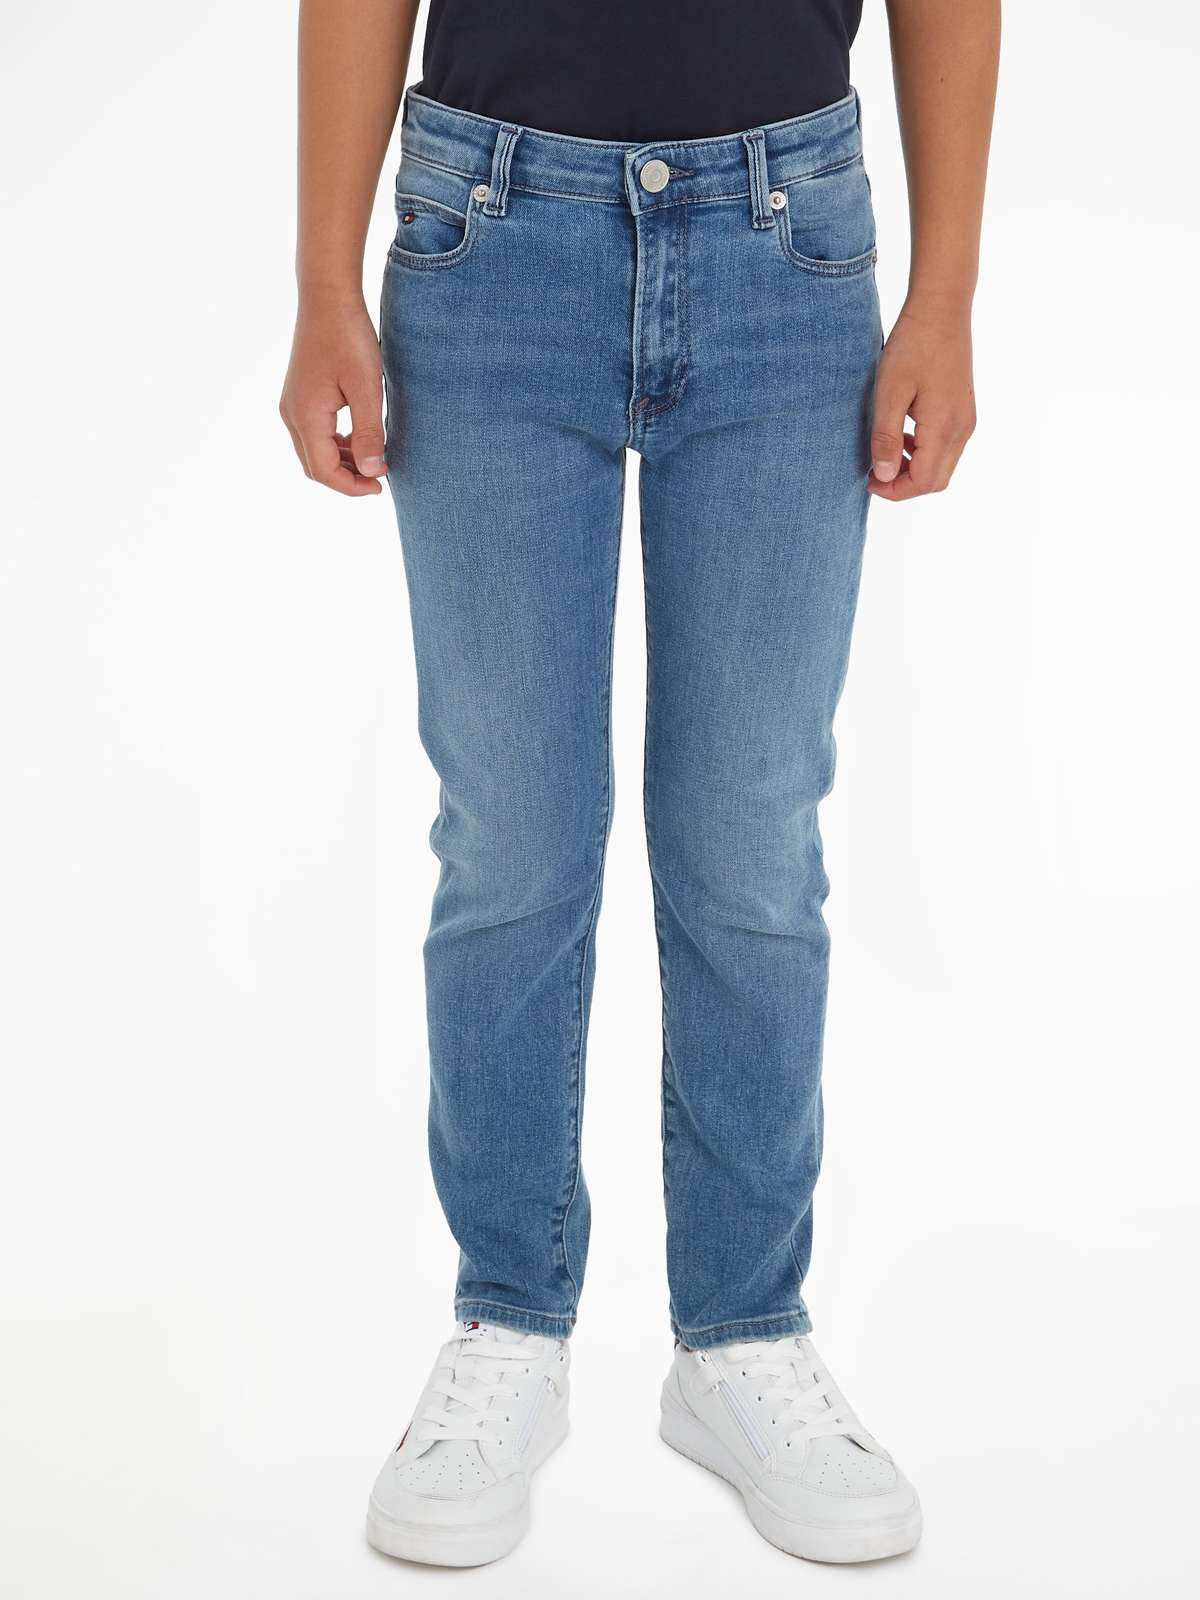 Прямые джинсы с вышитыми логотипами.